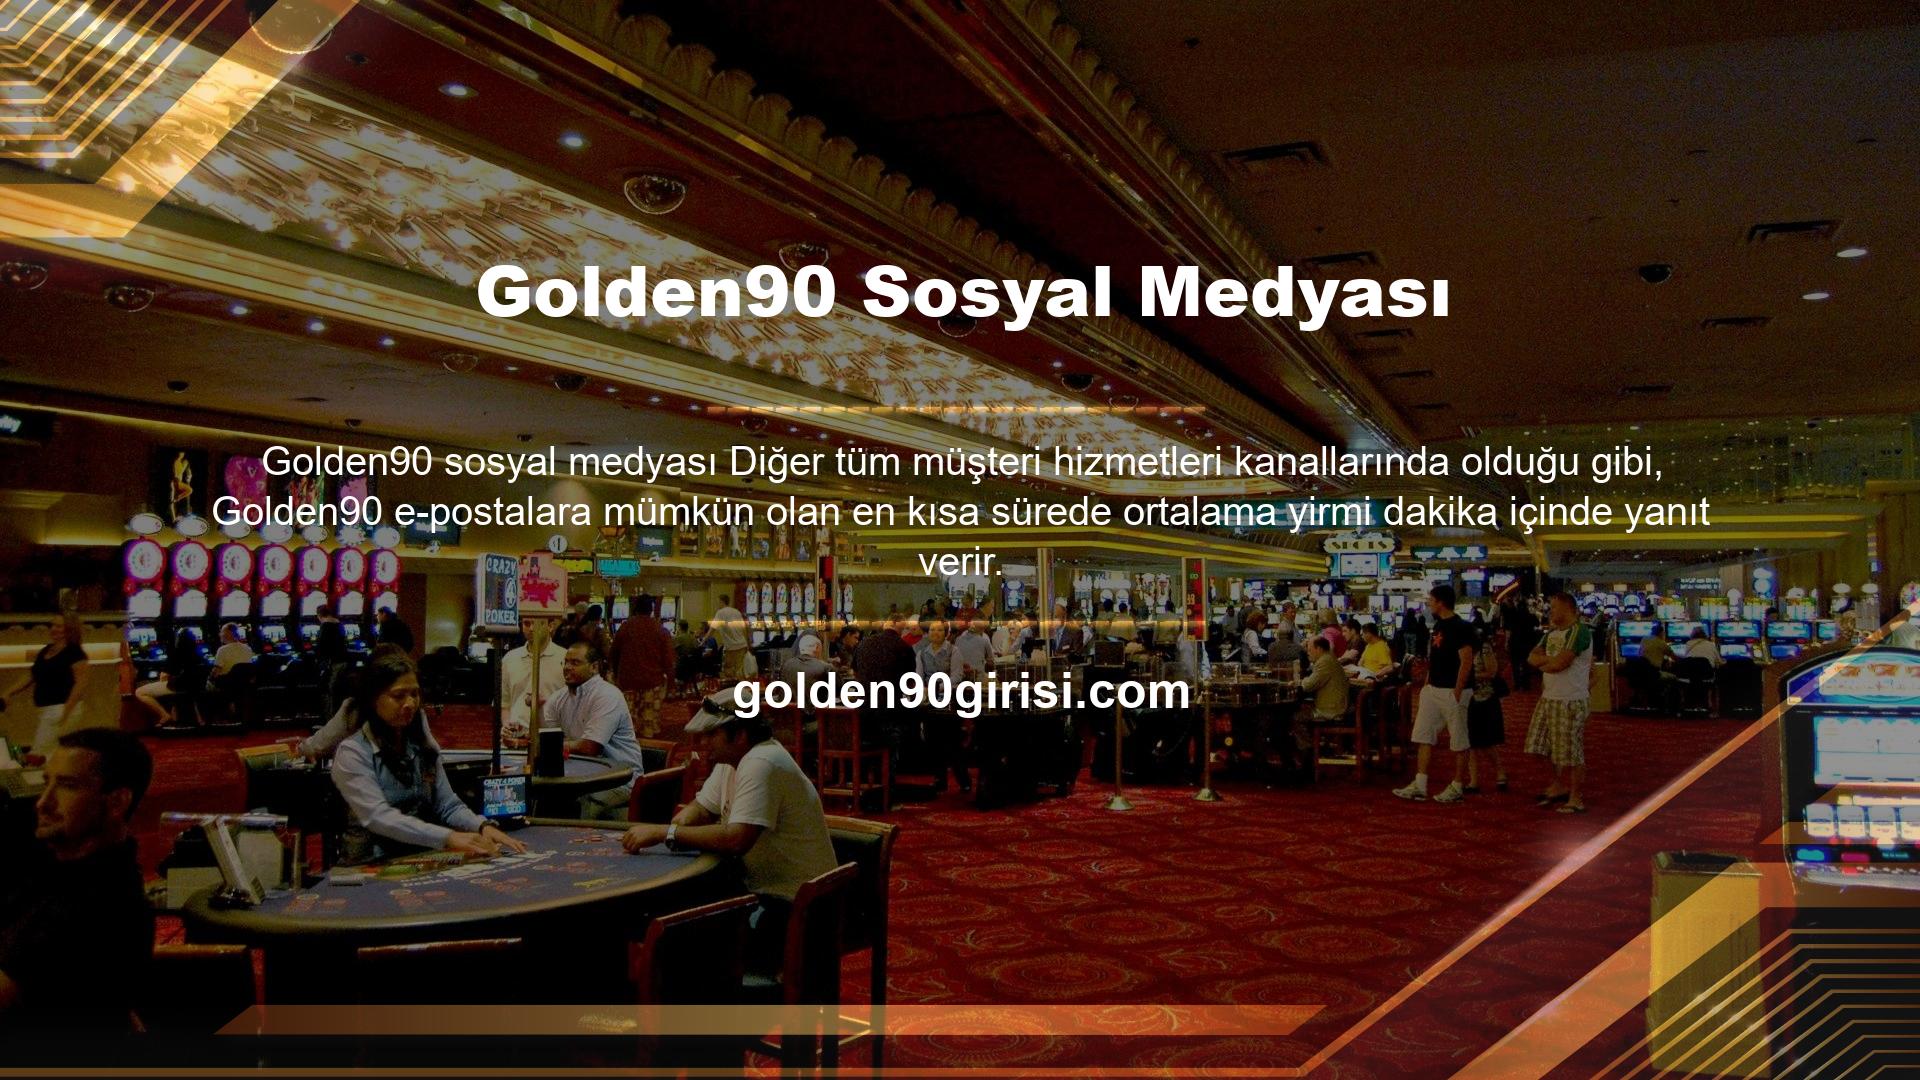 Üyelerle yakın iletişime önem veren Golden90, doğal olarak sosyal medya kanallarını da aktif olarak kullanıyorlar